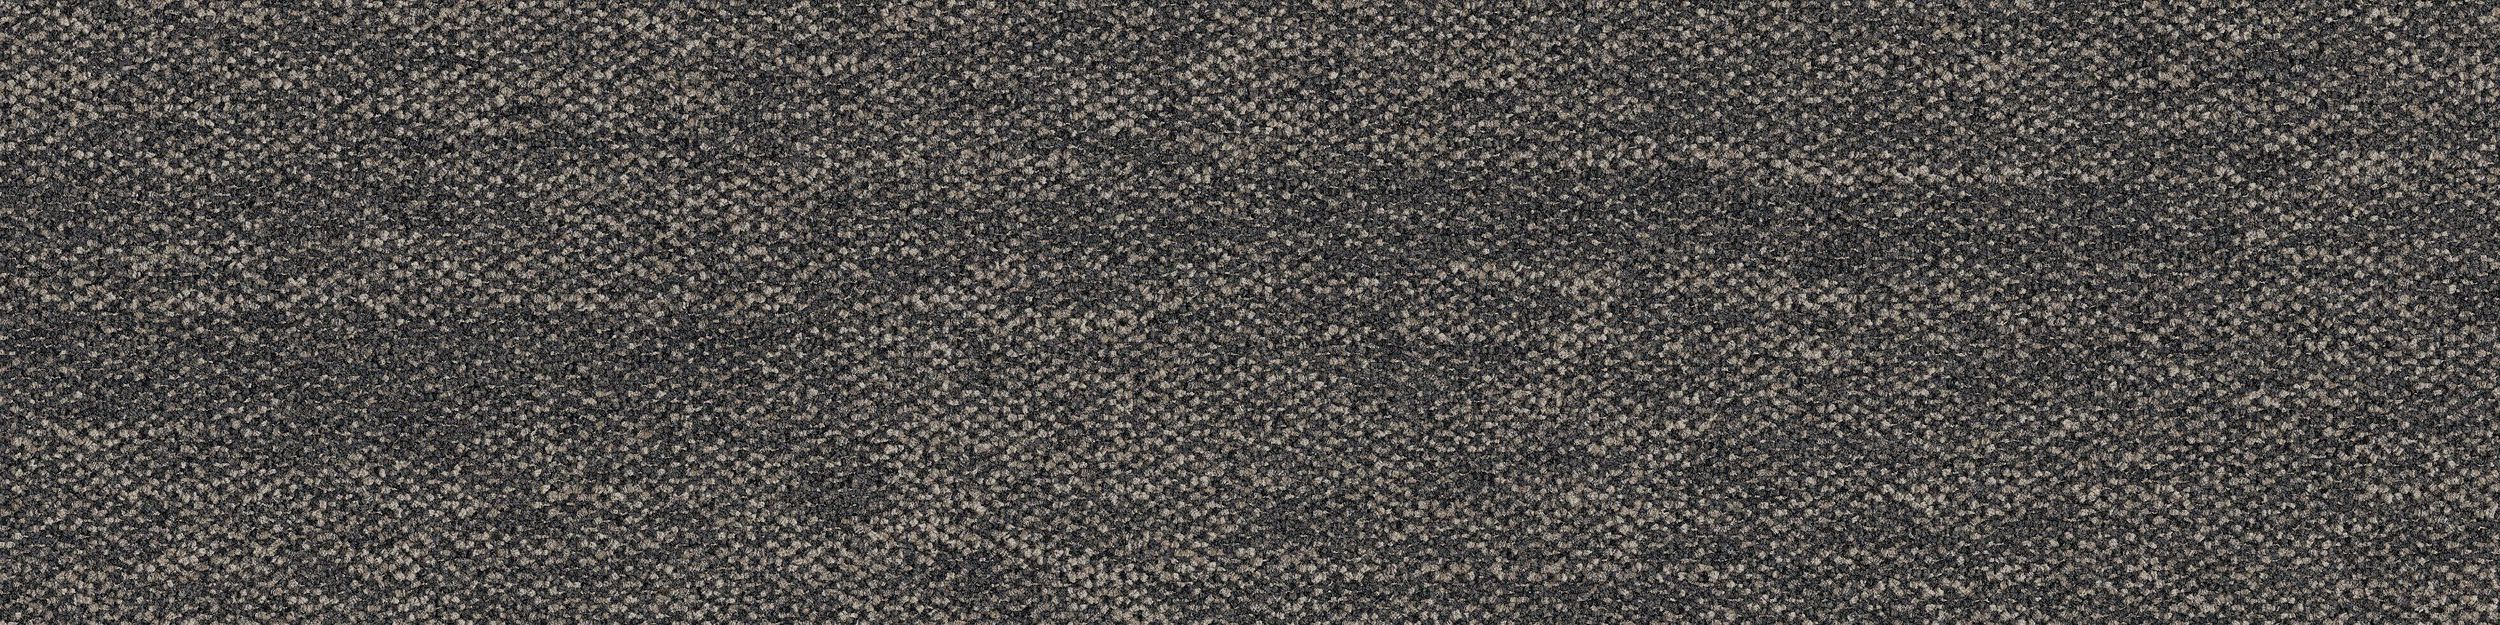 Open Air 402 Carpet Tile In Granite image number 2